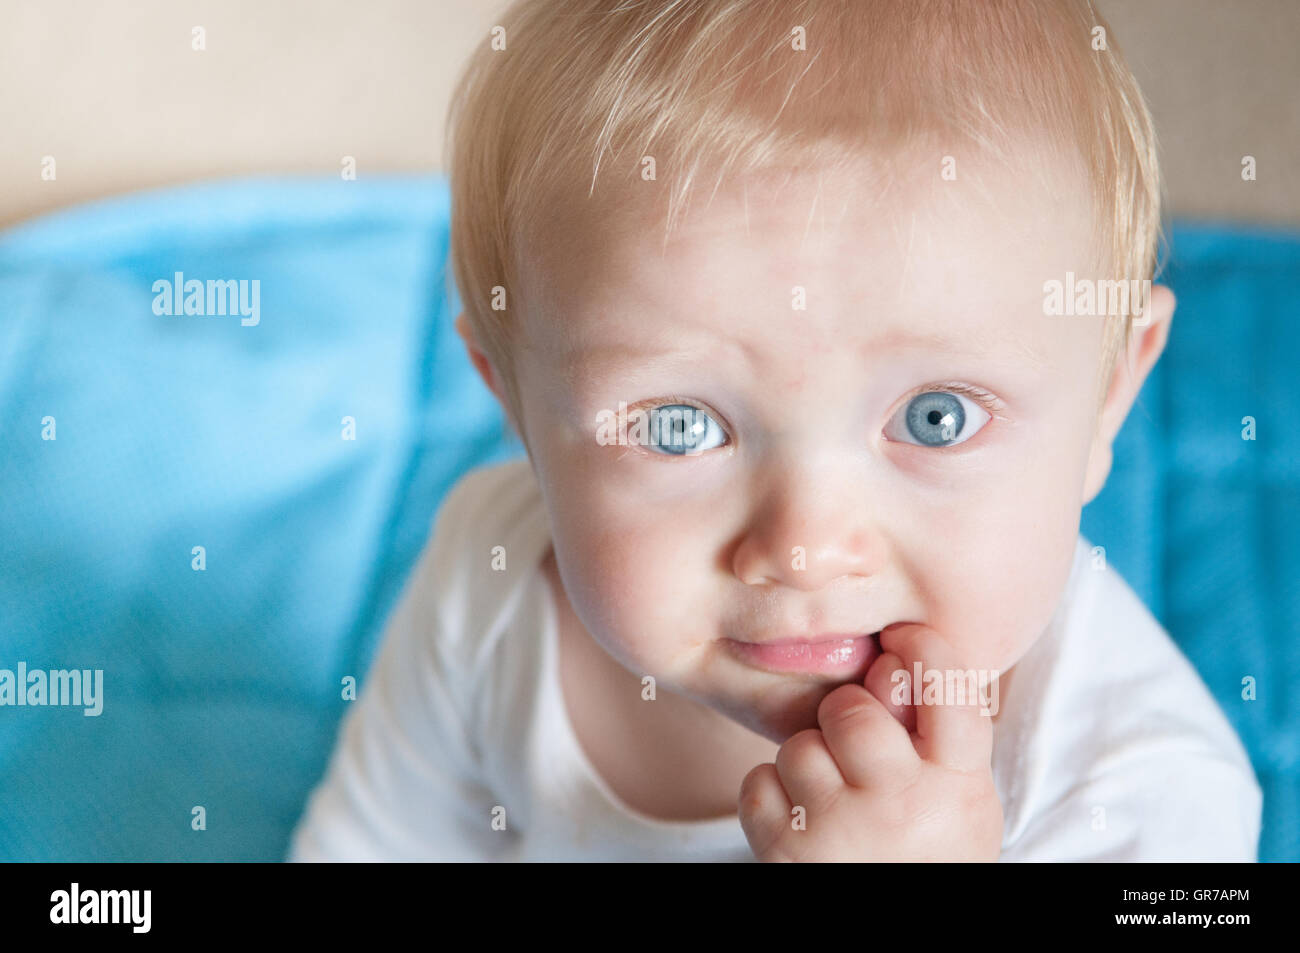 Bébé garçon aux yeux bleus et aux cheveux blonds à directement à l'appareil photo Banque D'Images